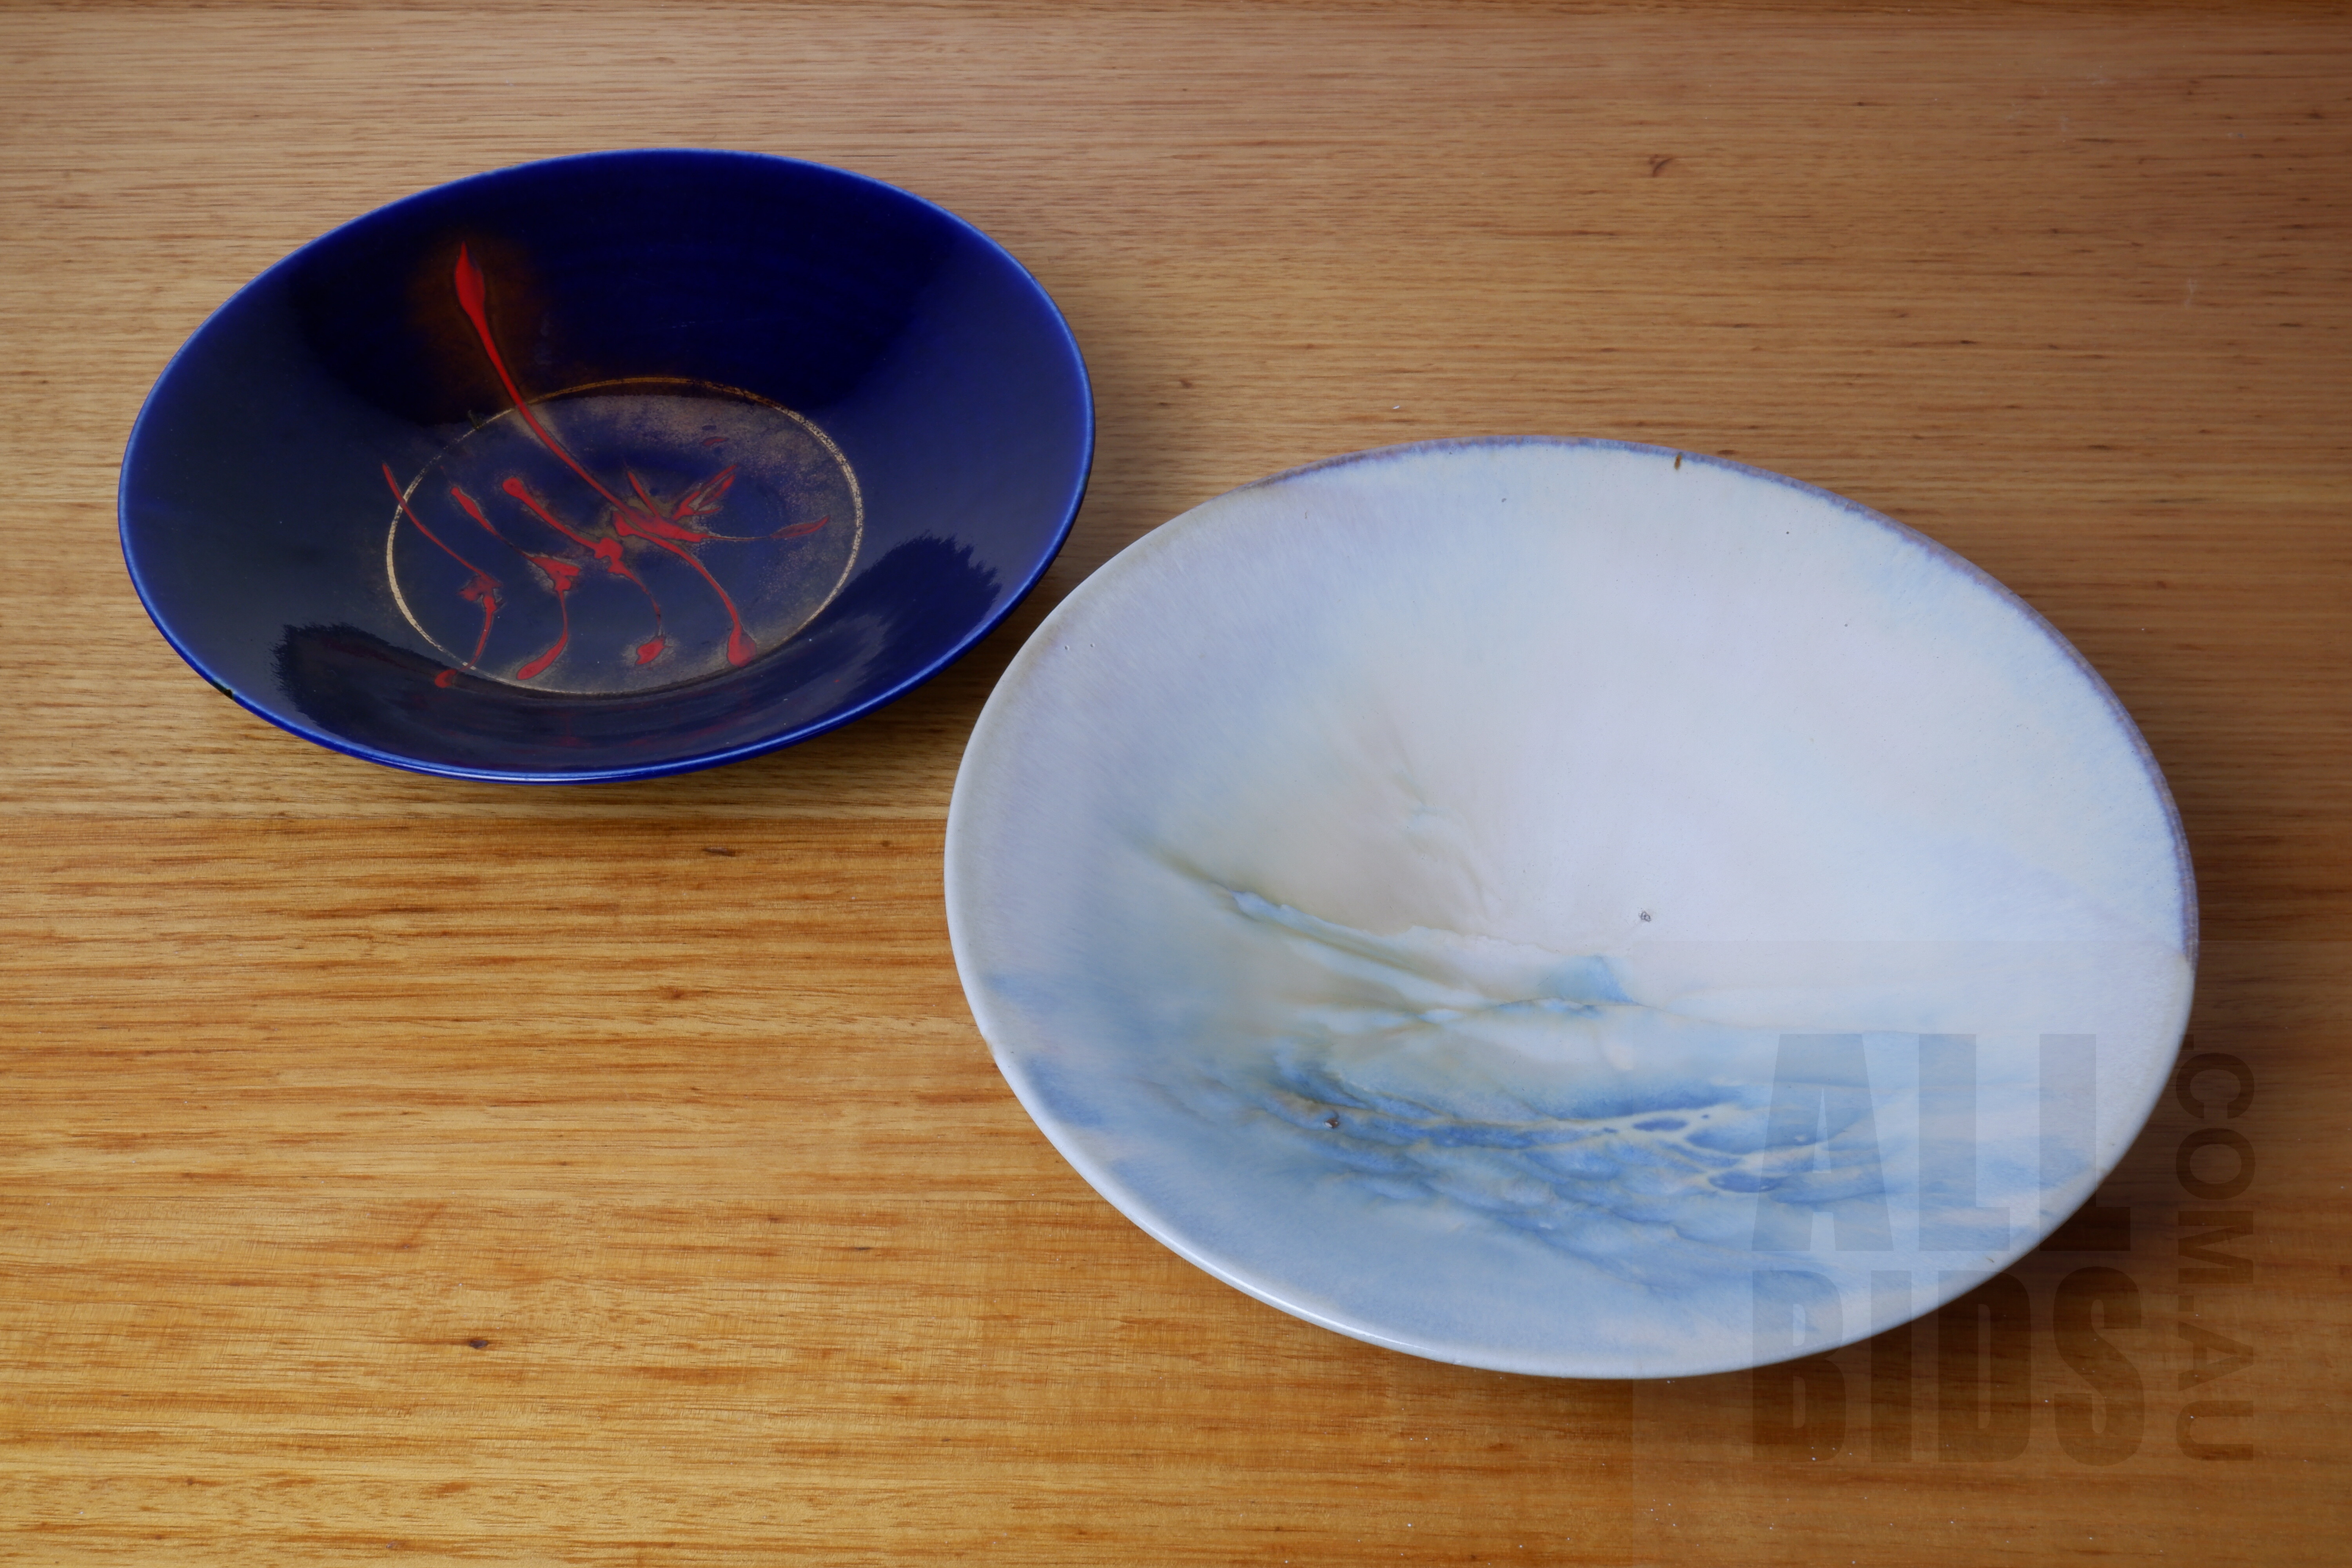 'Greg Daly (1954-) Two Glazed Ceramic Bowls'